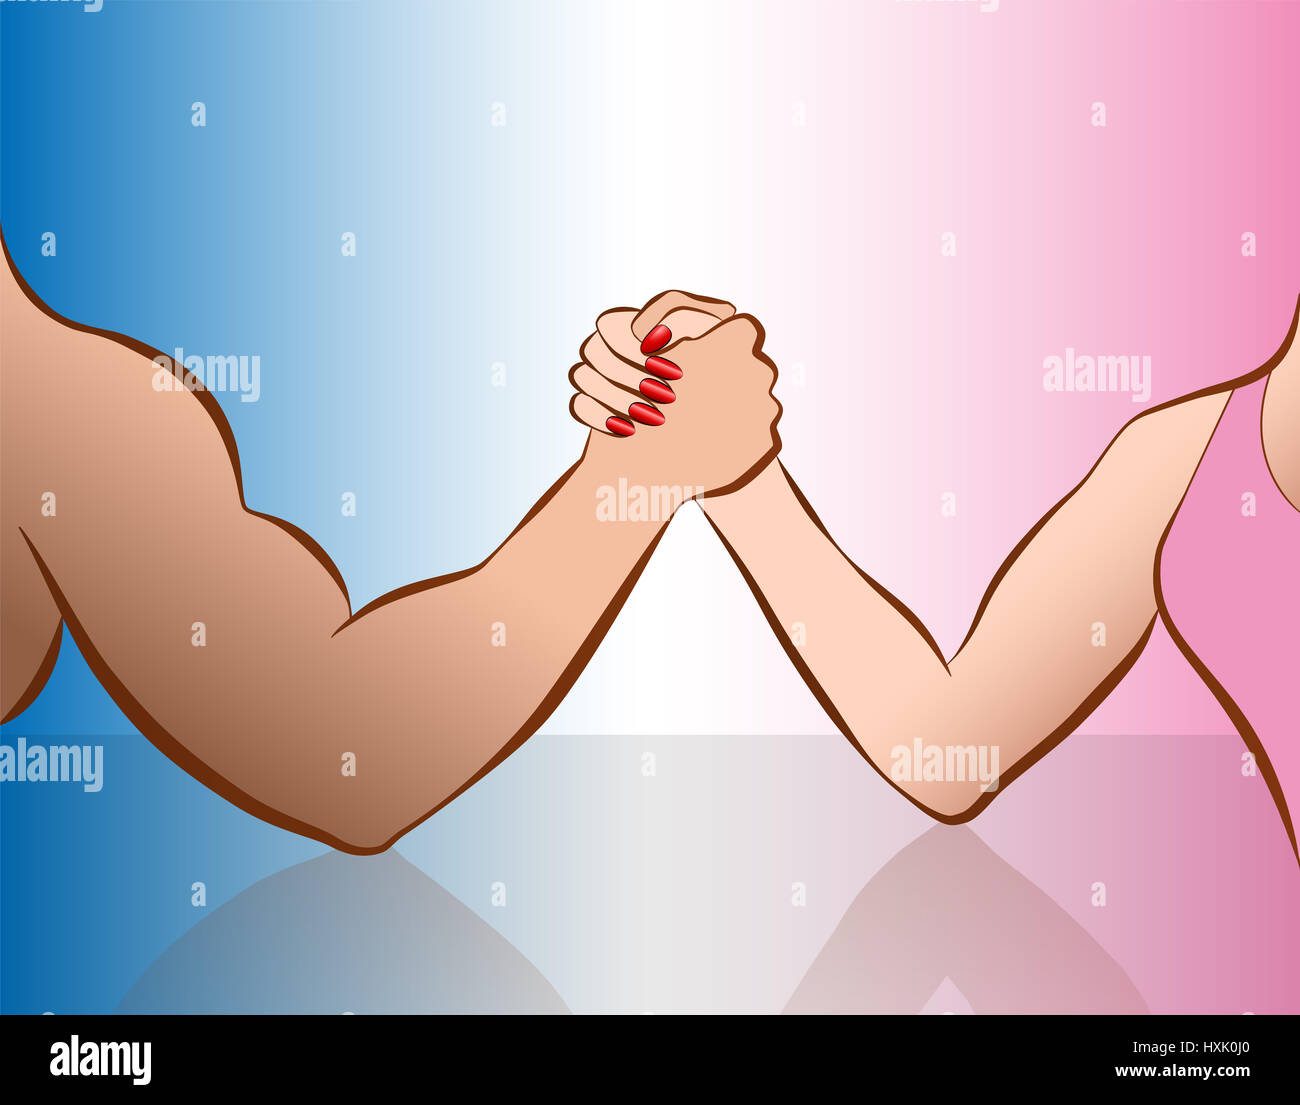 Armdrücken von Frau und Mann als Symbol für Geschlecht-Showdown. Abbildung auf rosa und blauen Farbverlauf. Stockfoto